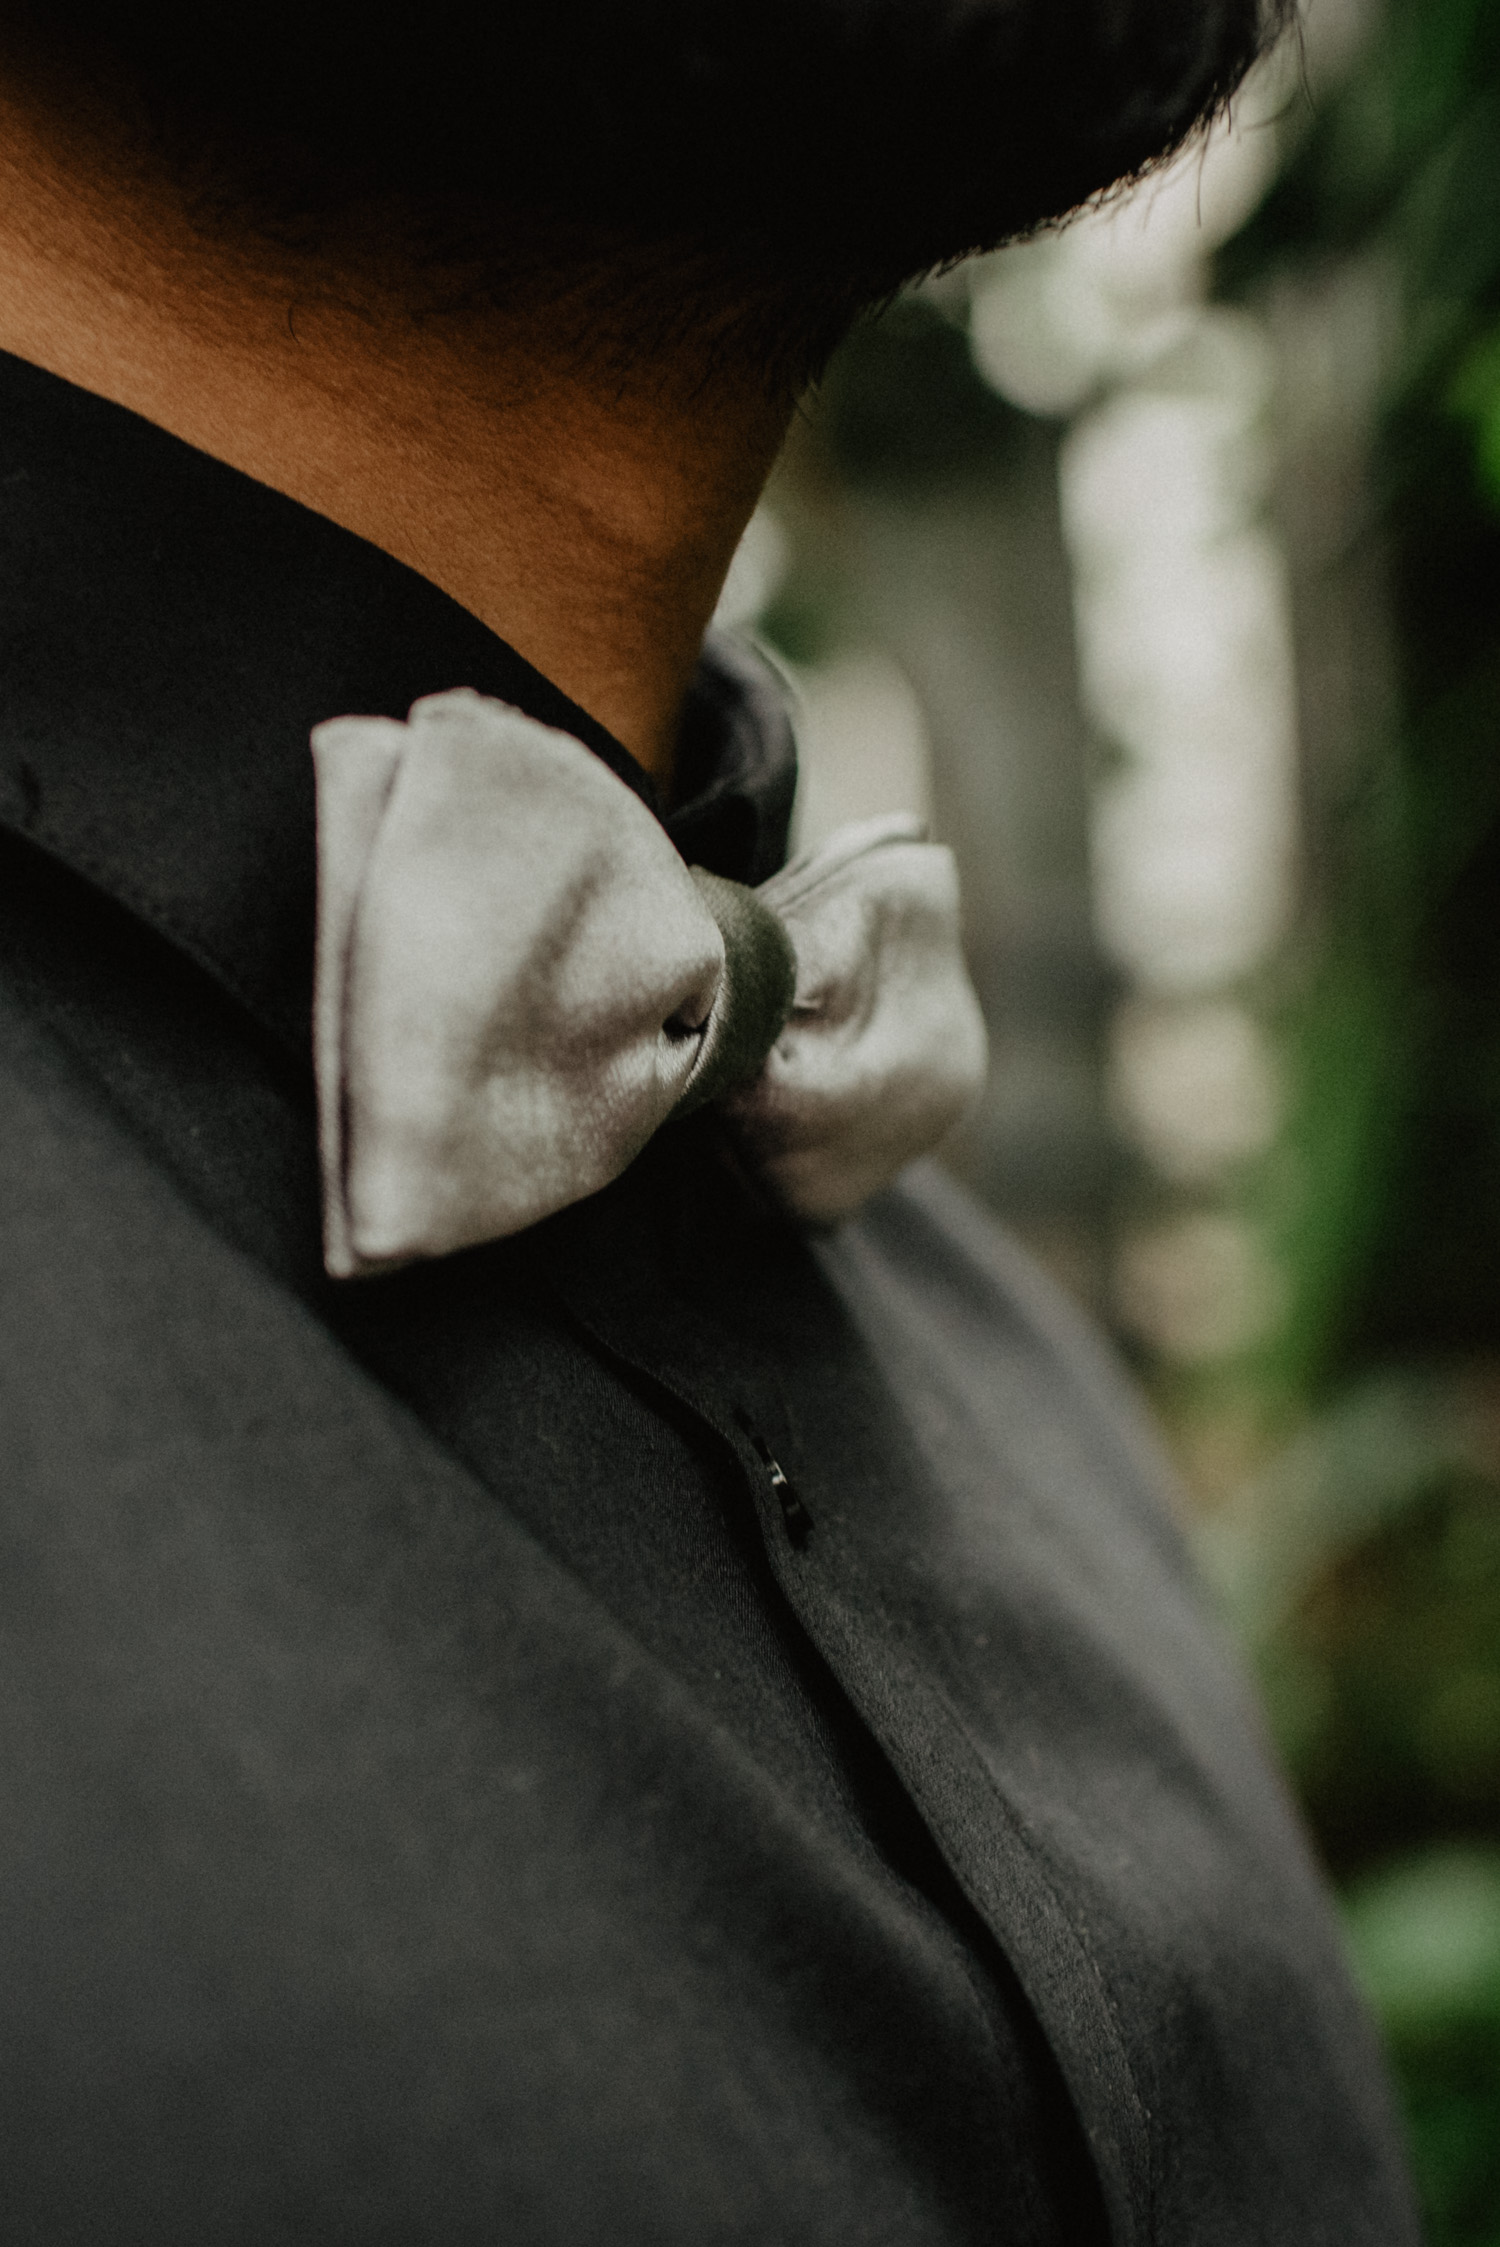 Detailfoto des Bräutigams. Es ist ein schwarzes Hemd mit einer grauen Fliege zu sehen.